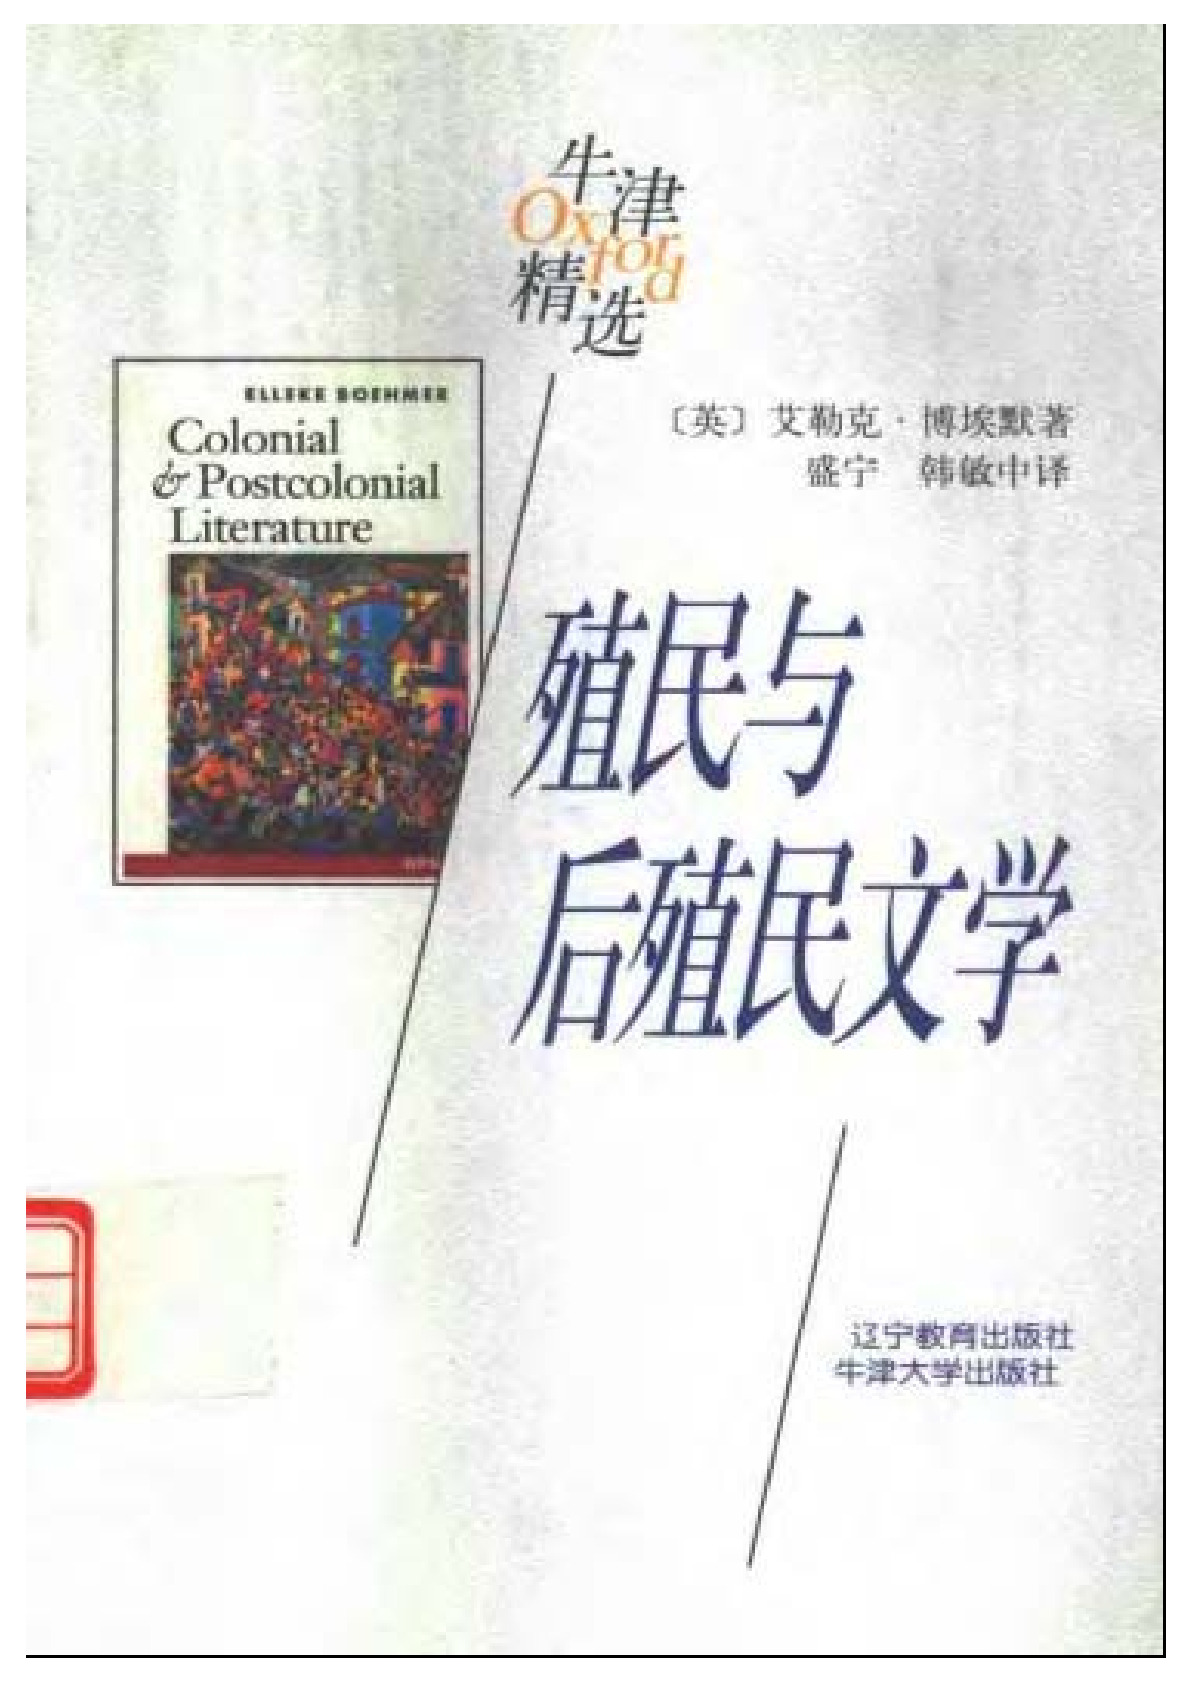 殖民与后殖民文学 ，博埃默：辽宁教育，1998